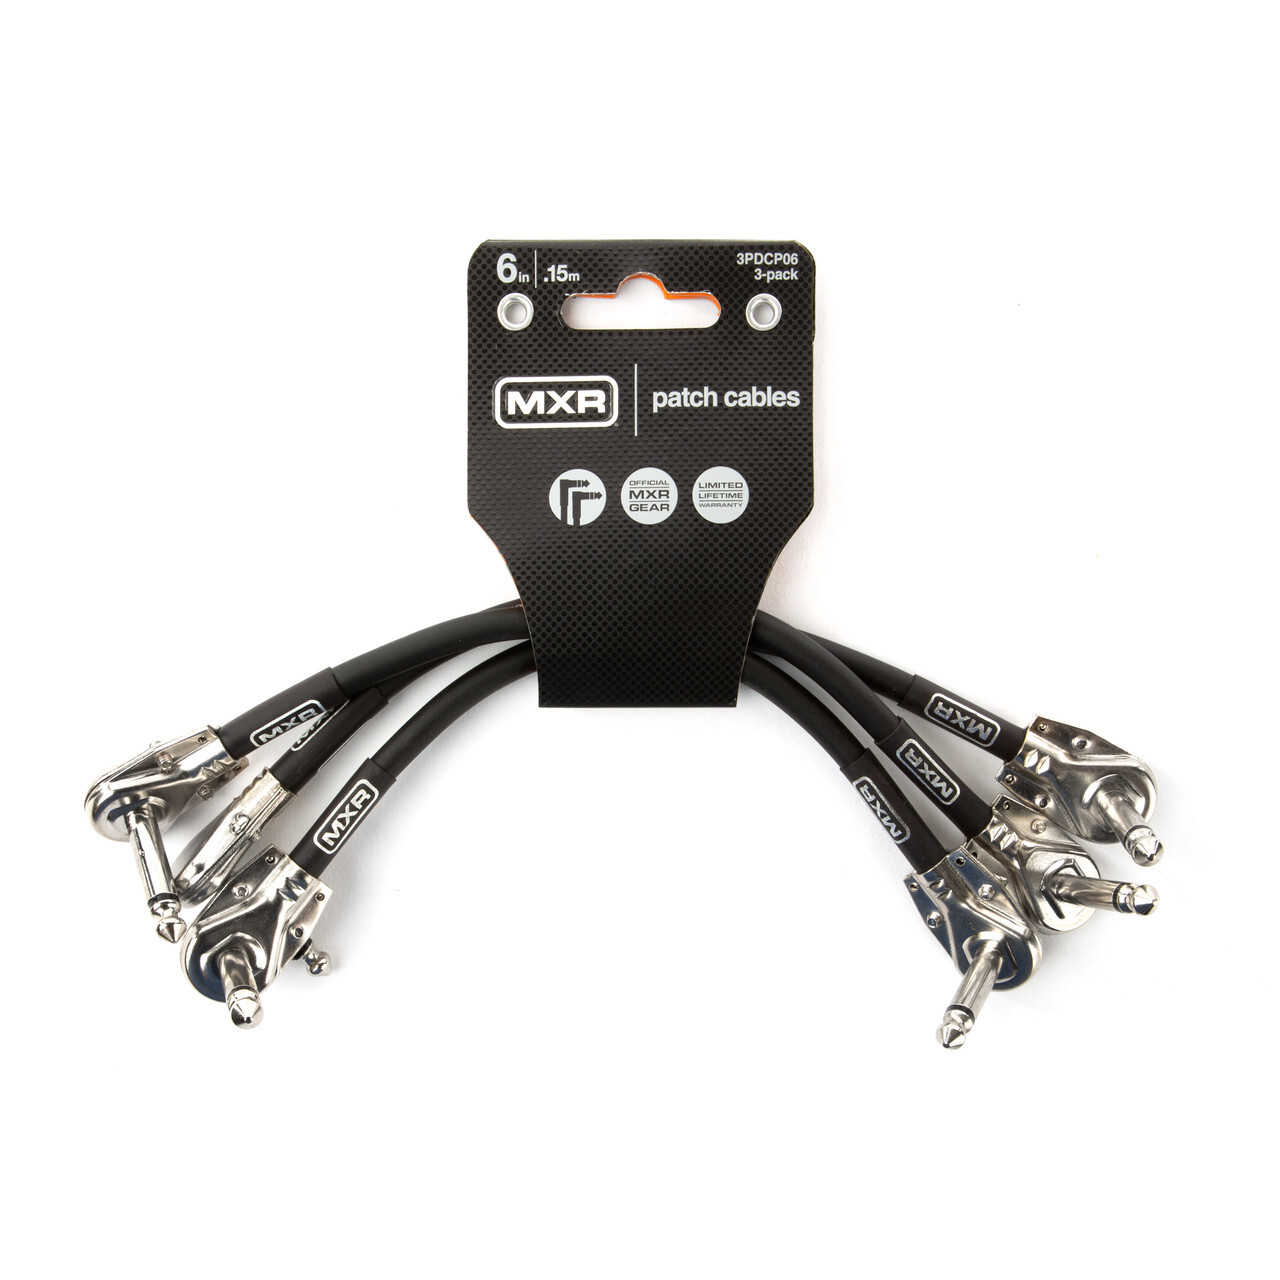 MXR Guitar Patch Cables - 3 Pack